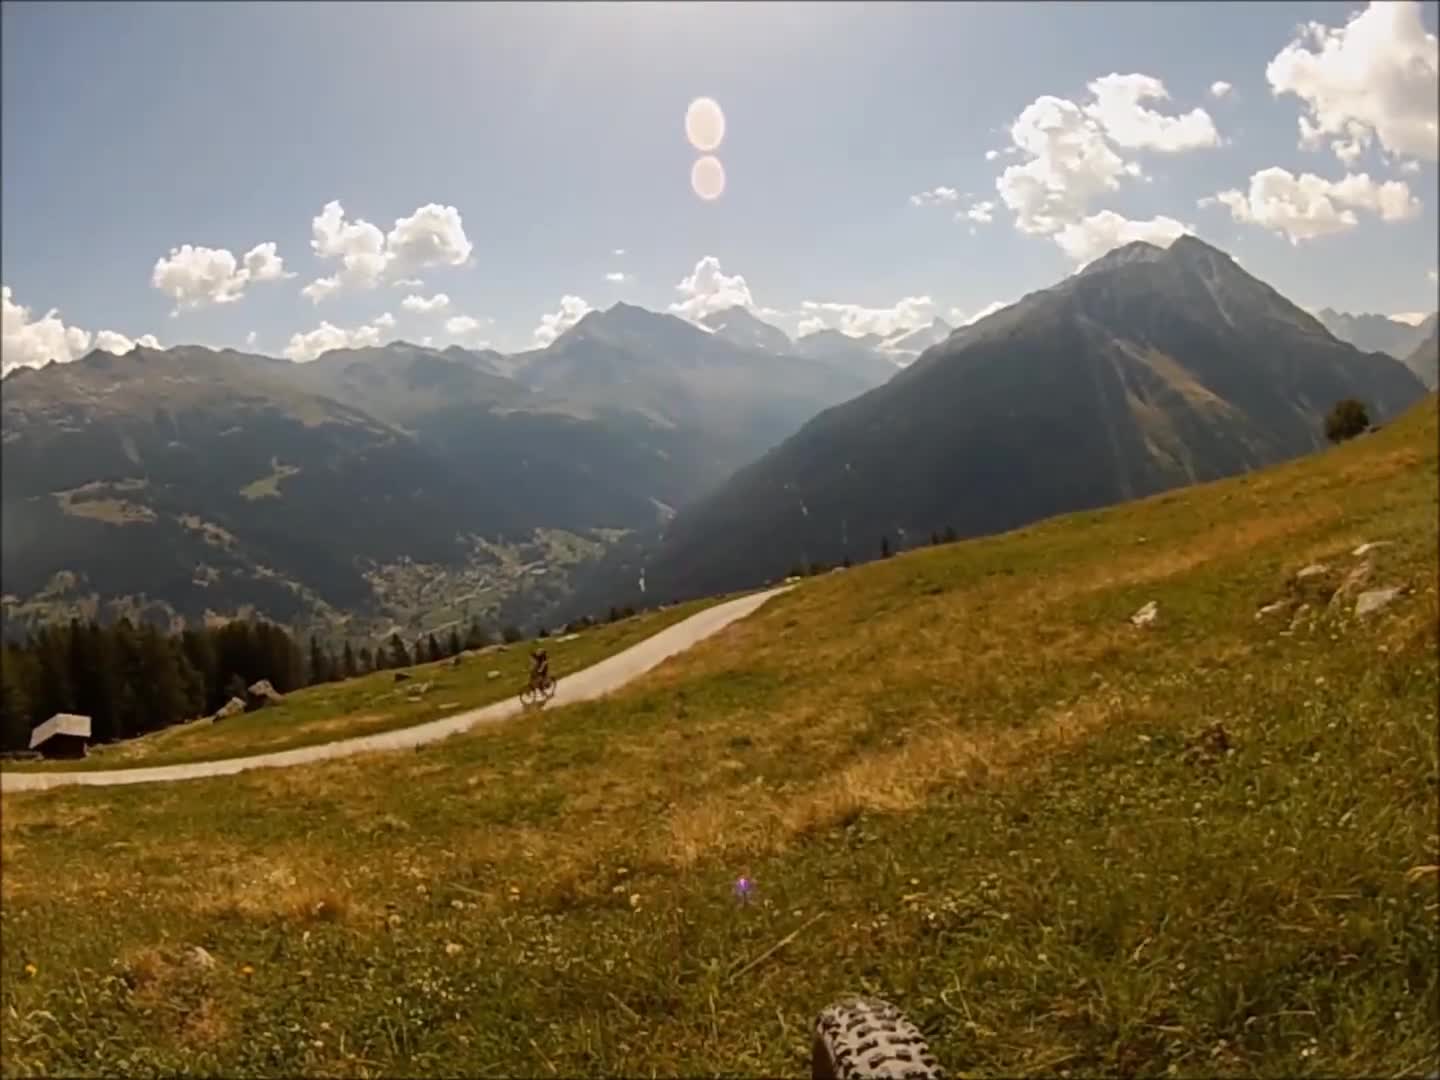 MTB Trail “Le Brésilien" / Valais (Switzerland)